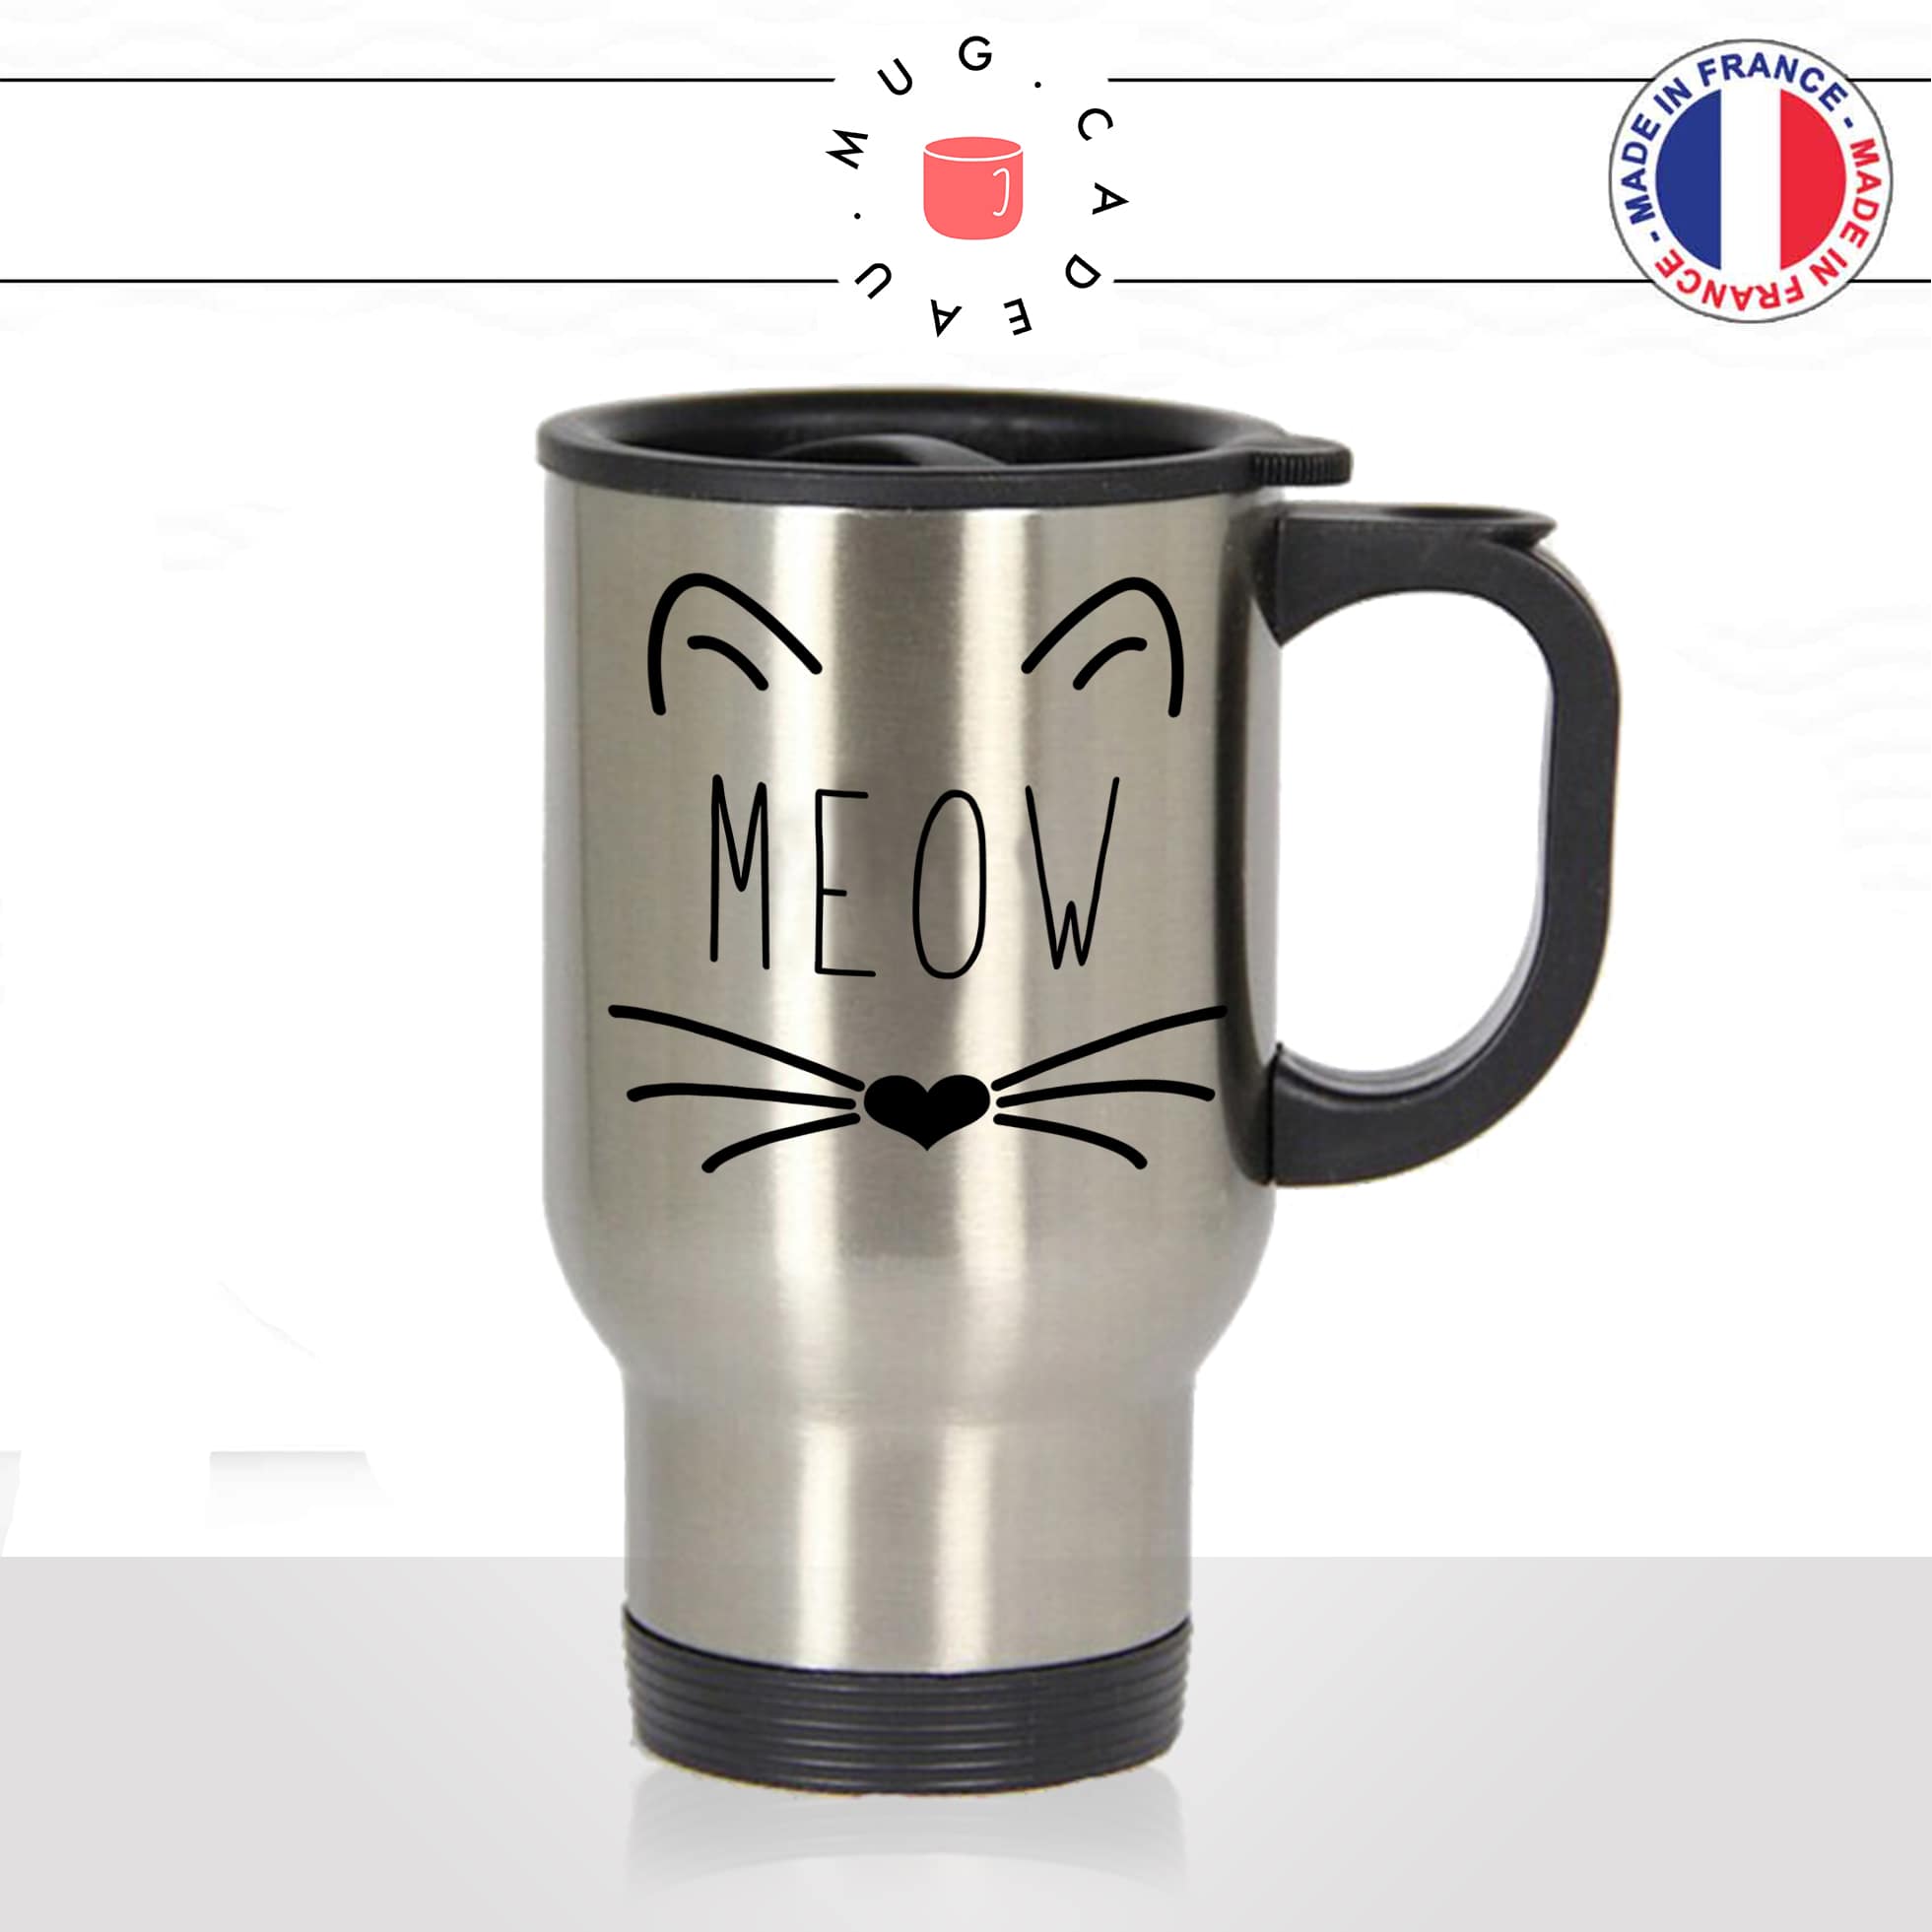 mug-tasse-thermos-de-voyage-café-thé-boisson-animal-animaux-chat-moustache-tete-coeur-meow-chaton-drole-idée-cadeau-original-fun-cool2-min